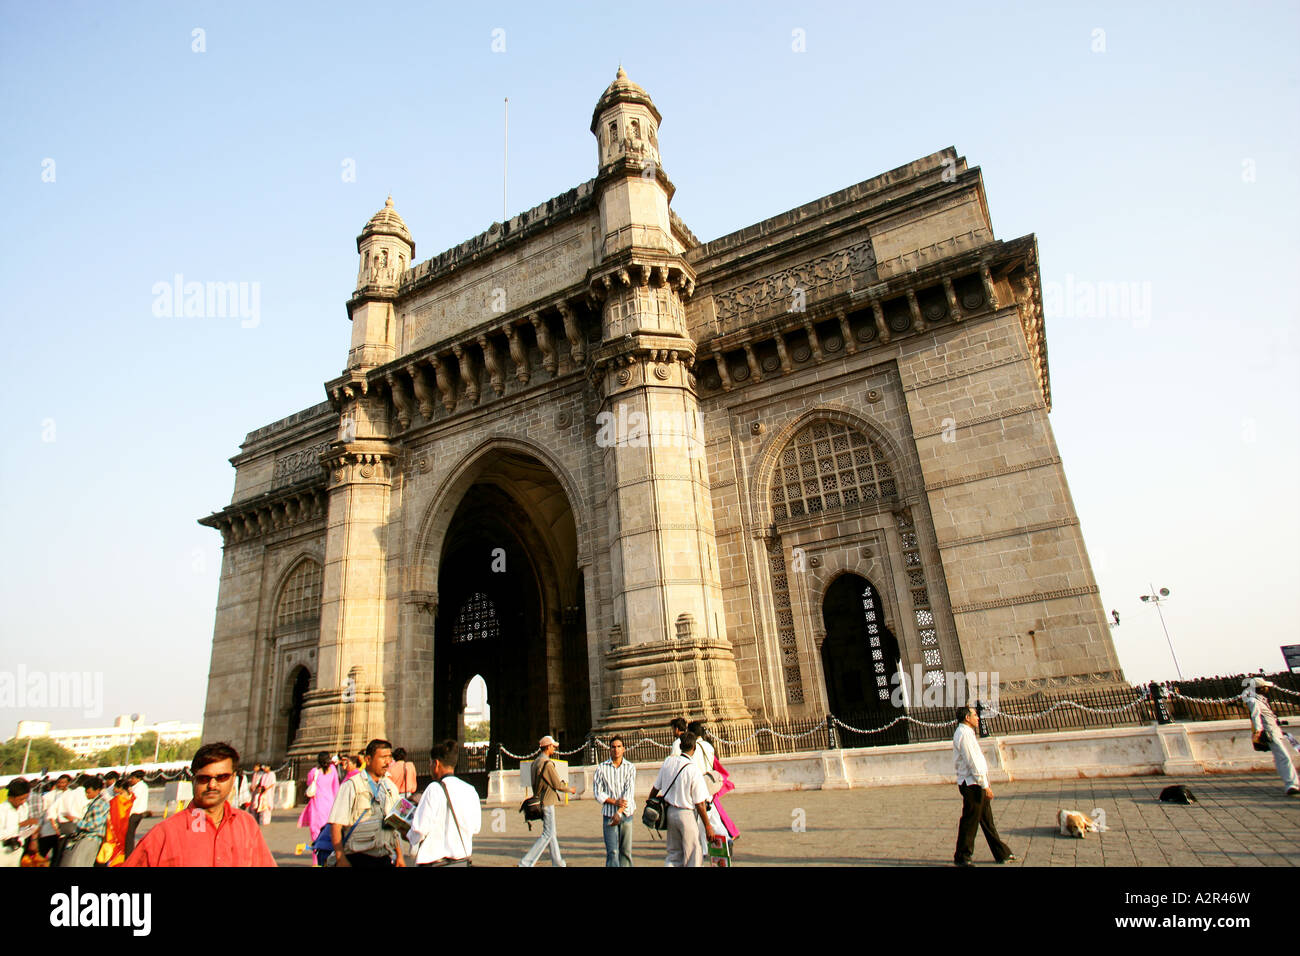 gateway to india Stock Photo